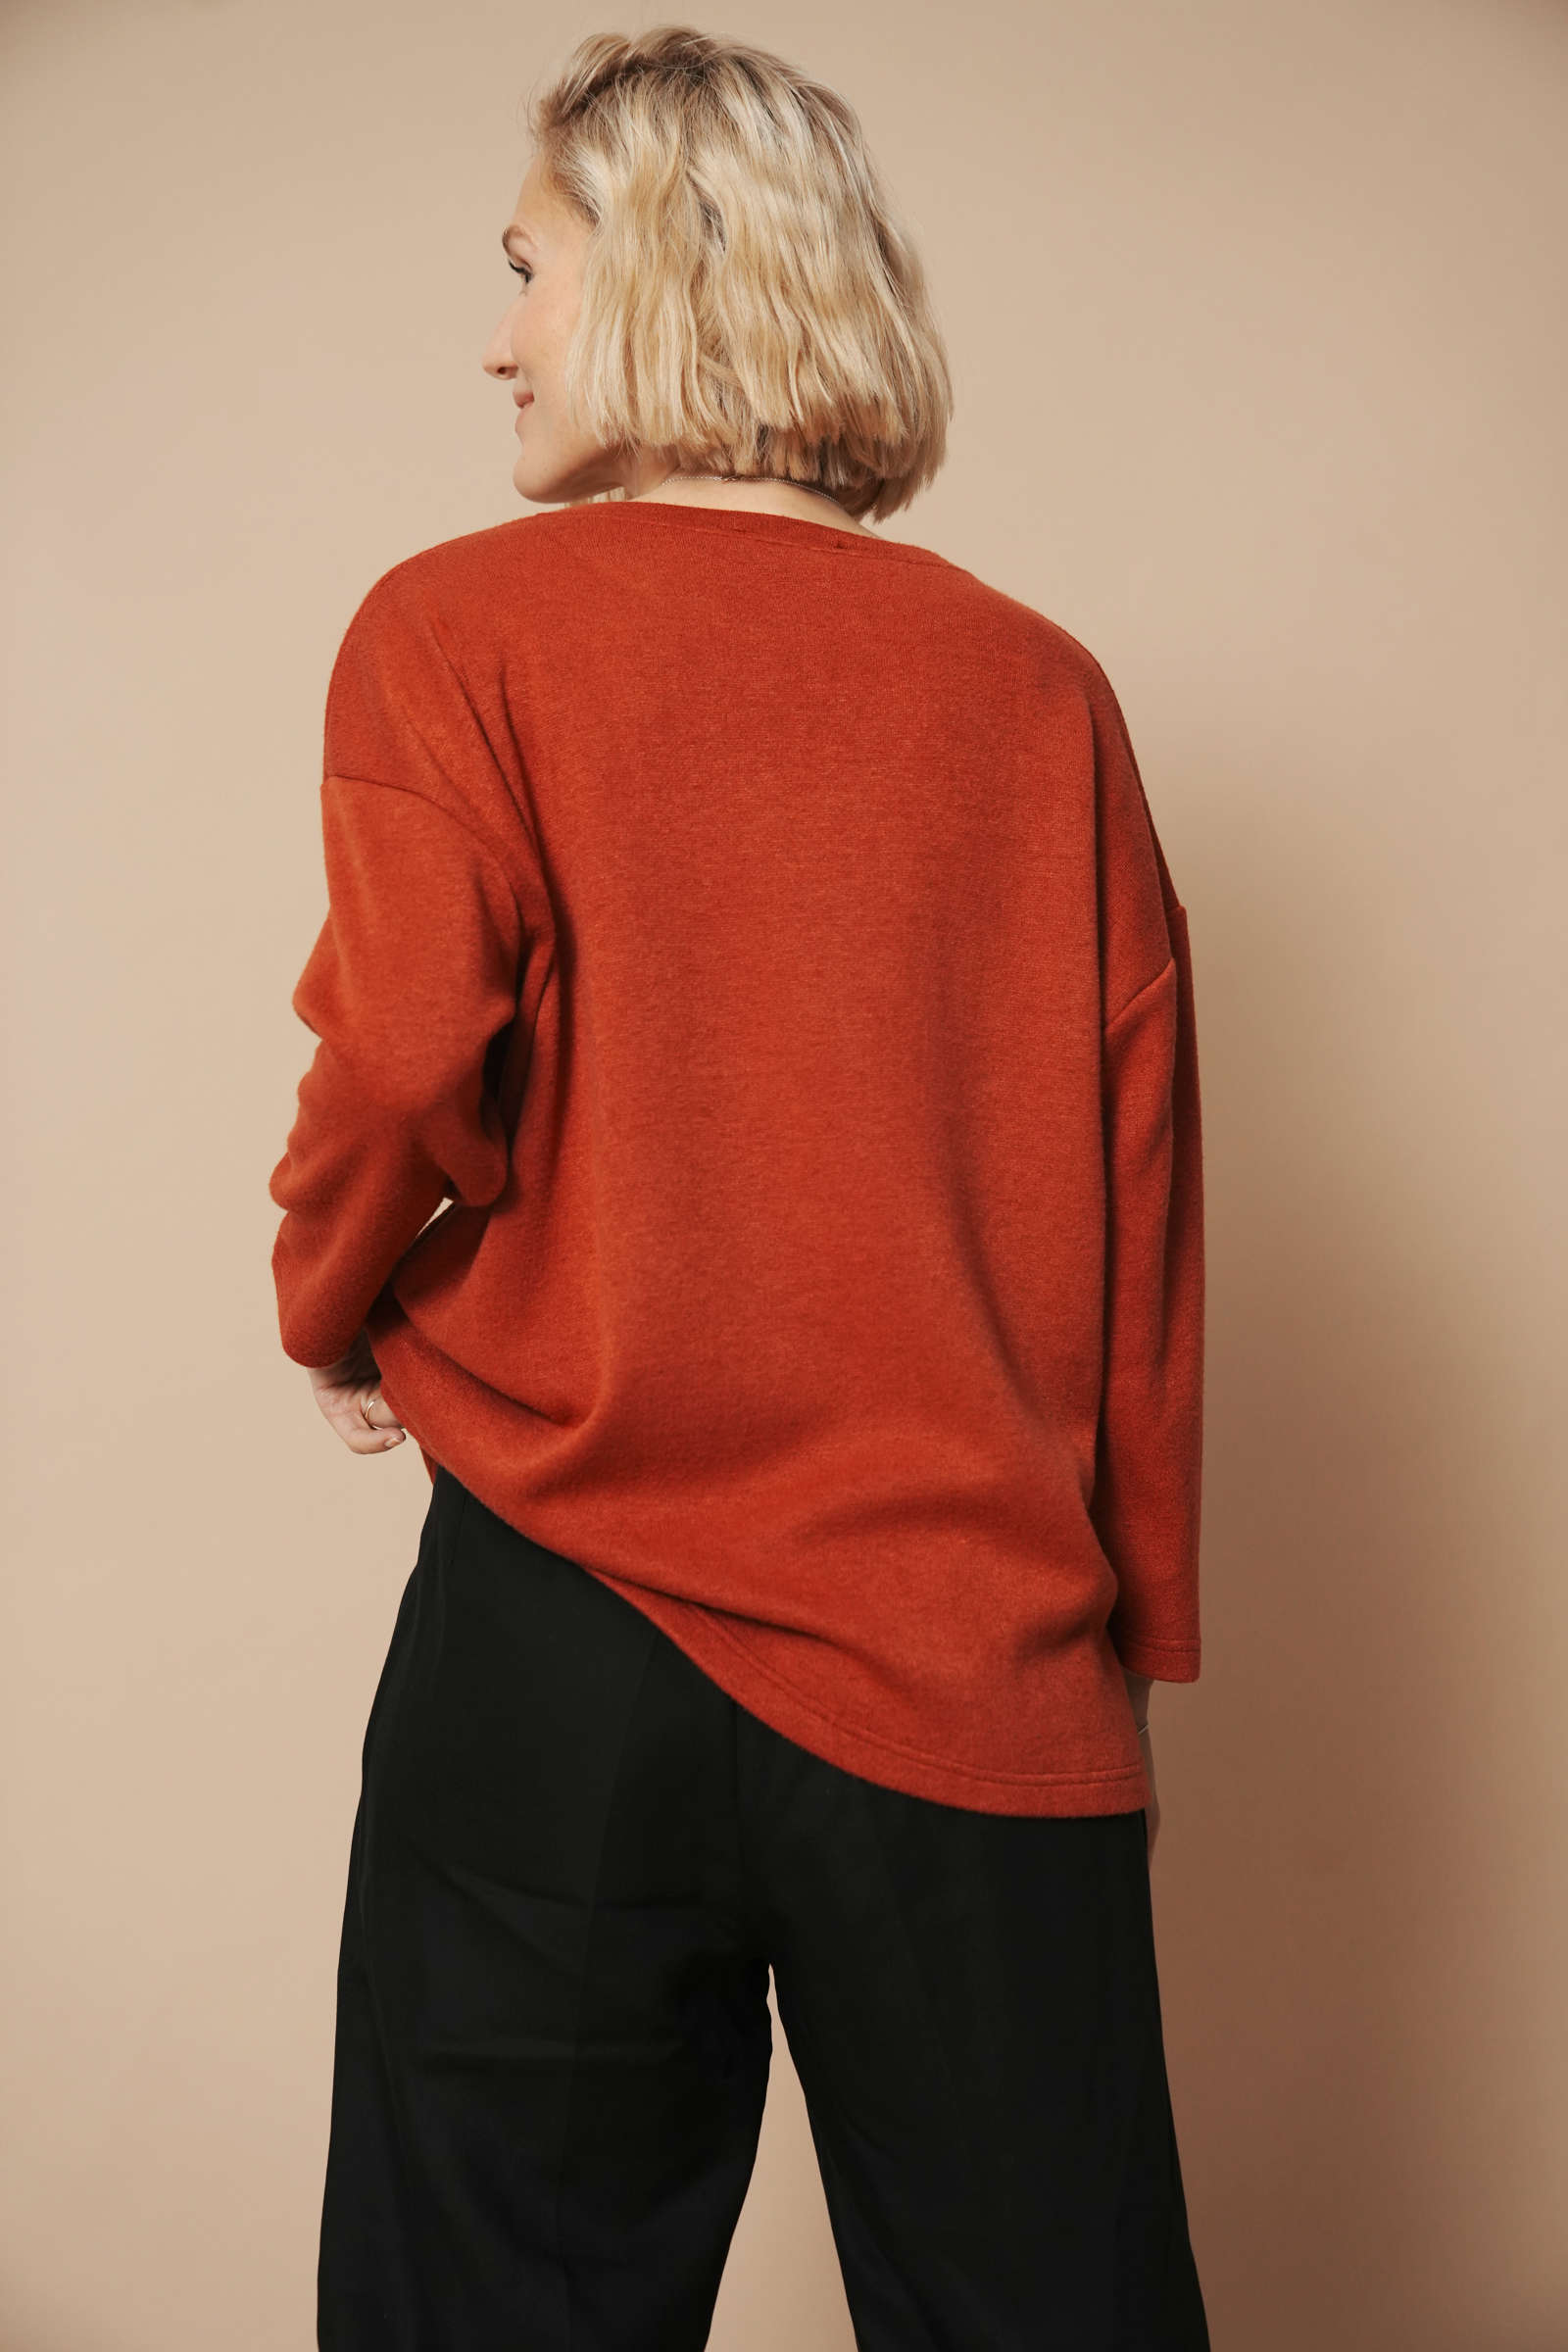 Blondes Model trägt einen hochwertigen Strickpullover für Damen. Sie zeigt die Ansicht von hinten und hat dabei die linke hand am Pullover und rafft ihn etwas nach oben.